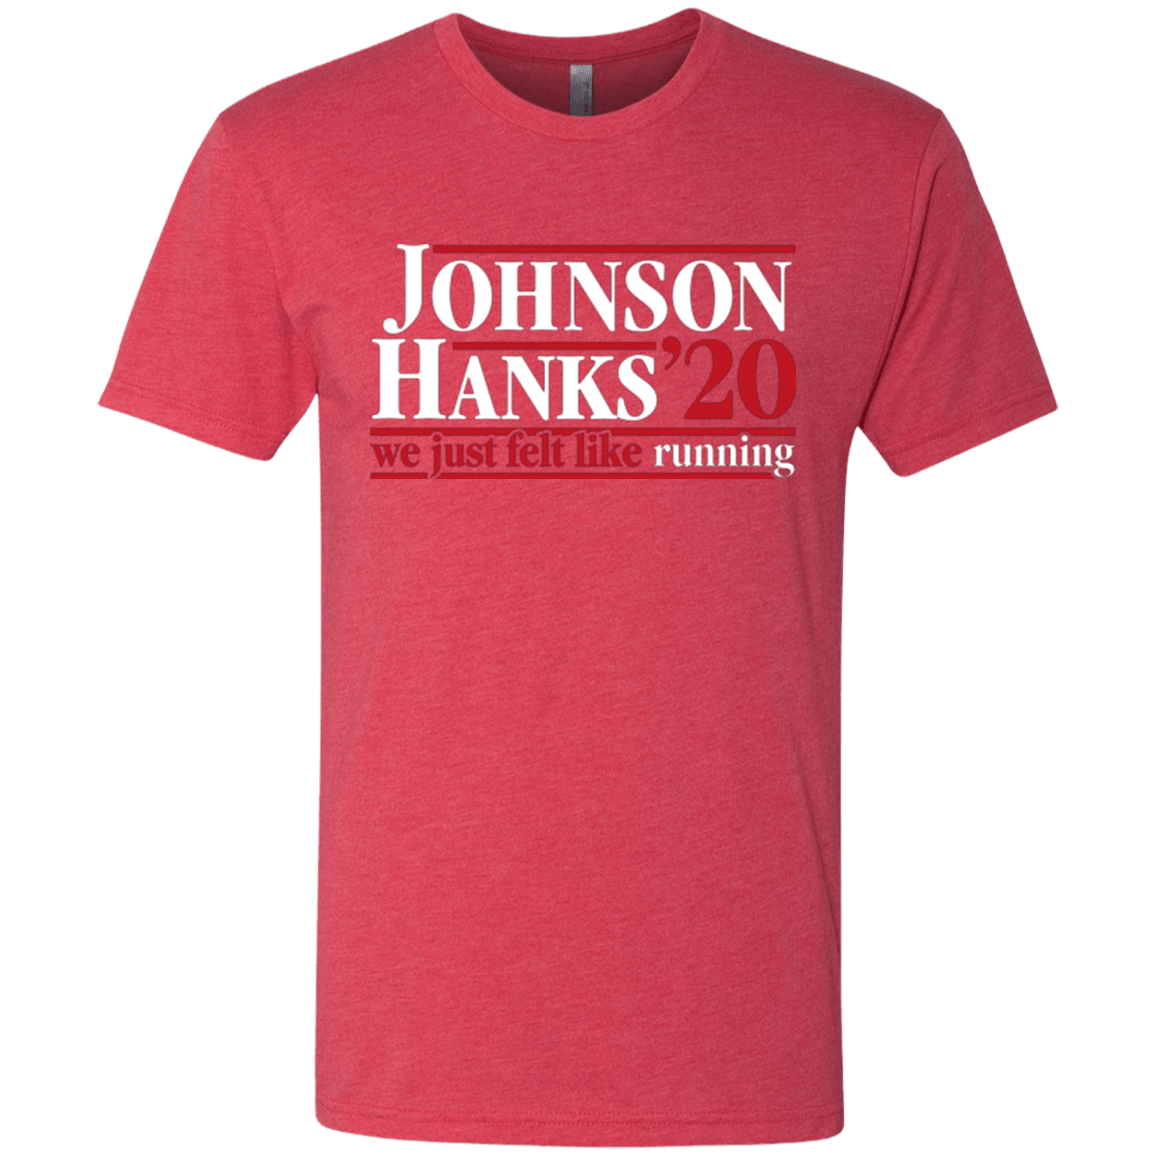 Johnson Hanks 2020 Men's Triblend T-Shirt